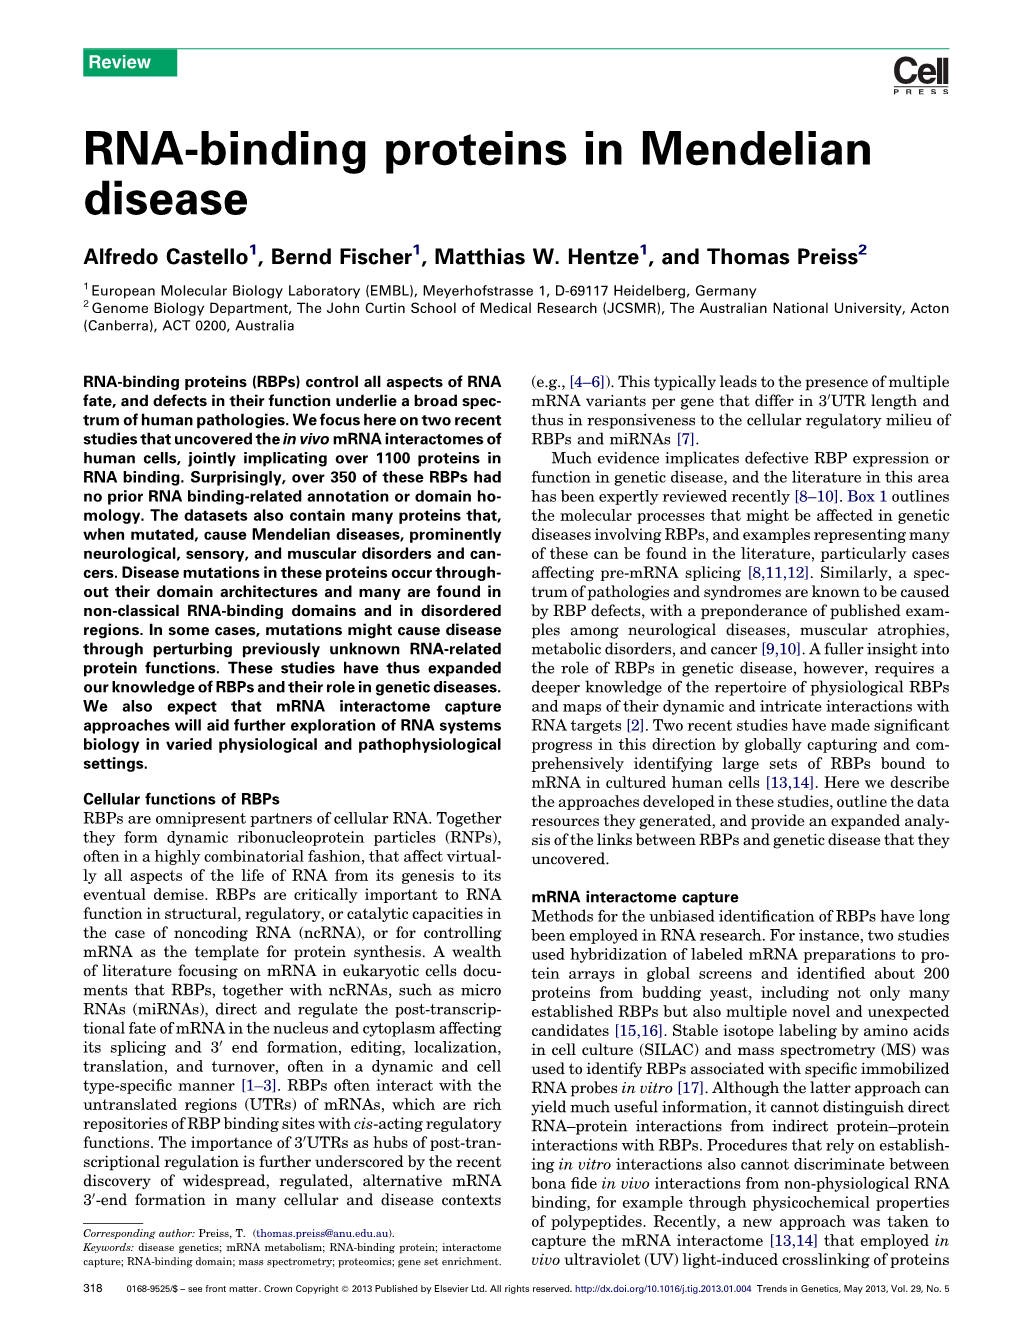 RNA-Binding Proteins in Mendelian Disease